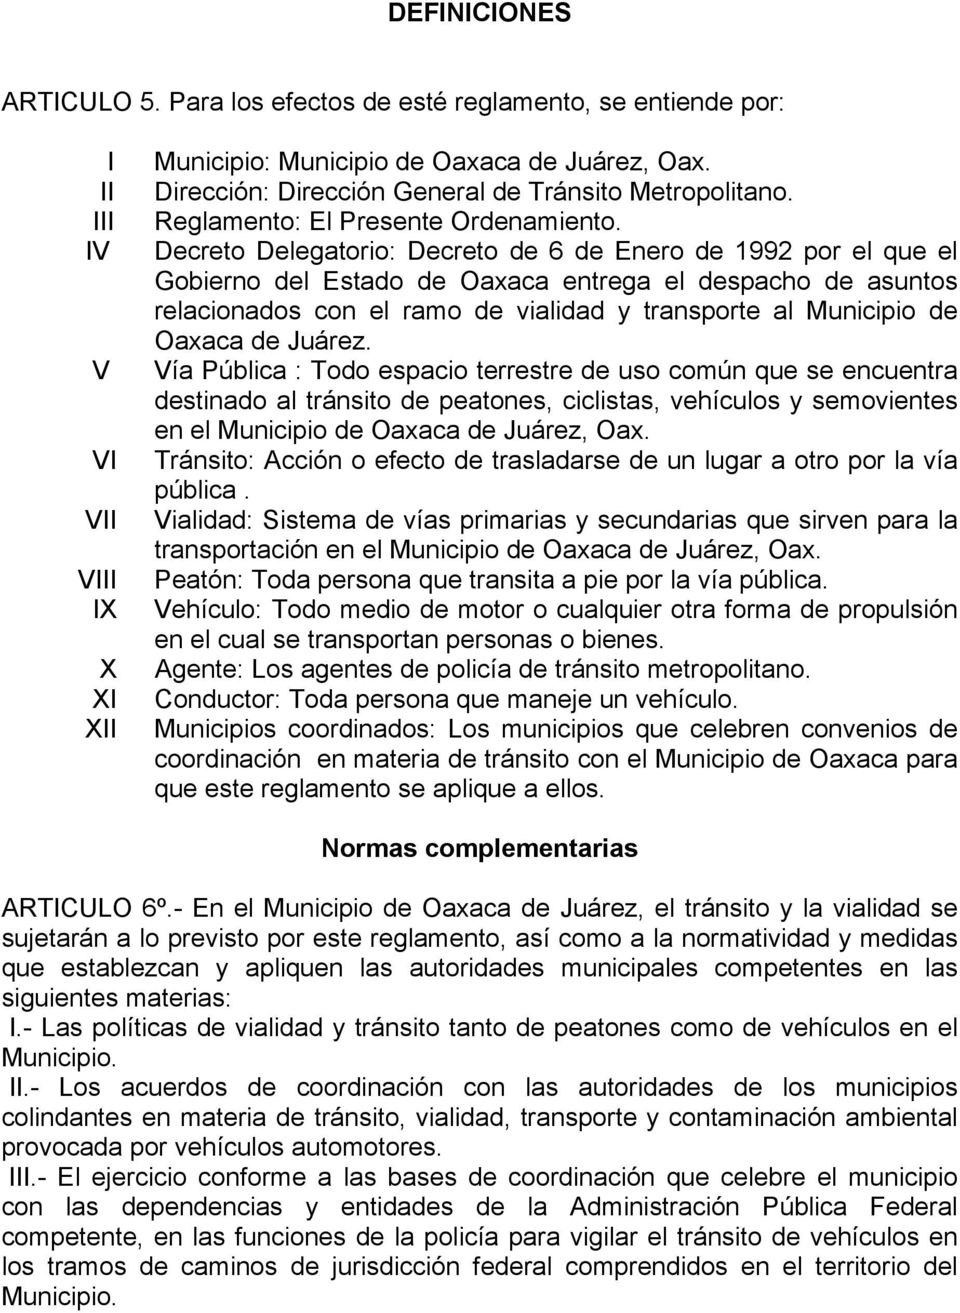 Decreto Delegatorio: Decreto de 6 de Enero de 1992 por el que el Gobierno del Estado de Oaxaca entrega el despacho de asuntos relacionados con el ramo de vialidad y transporte al Municipio de Oaxaca